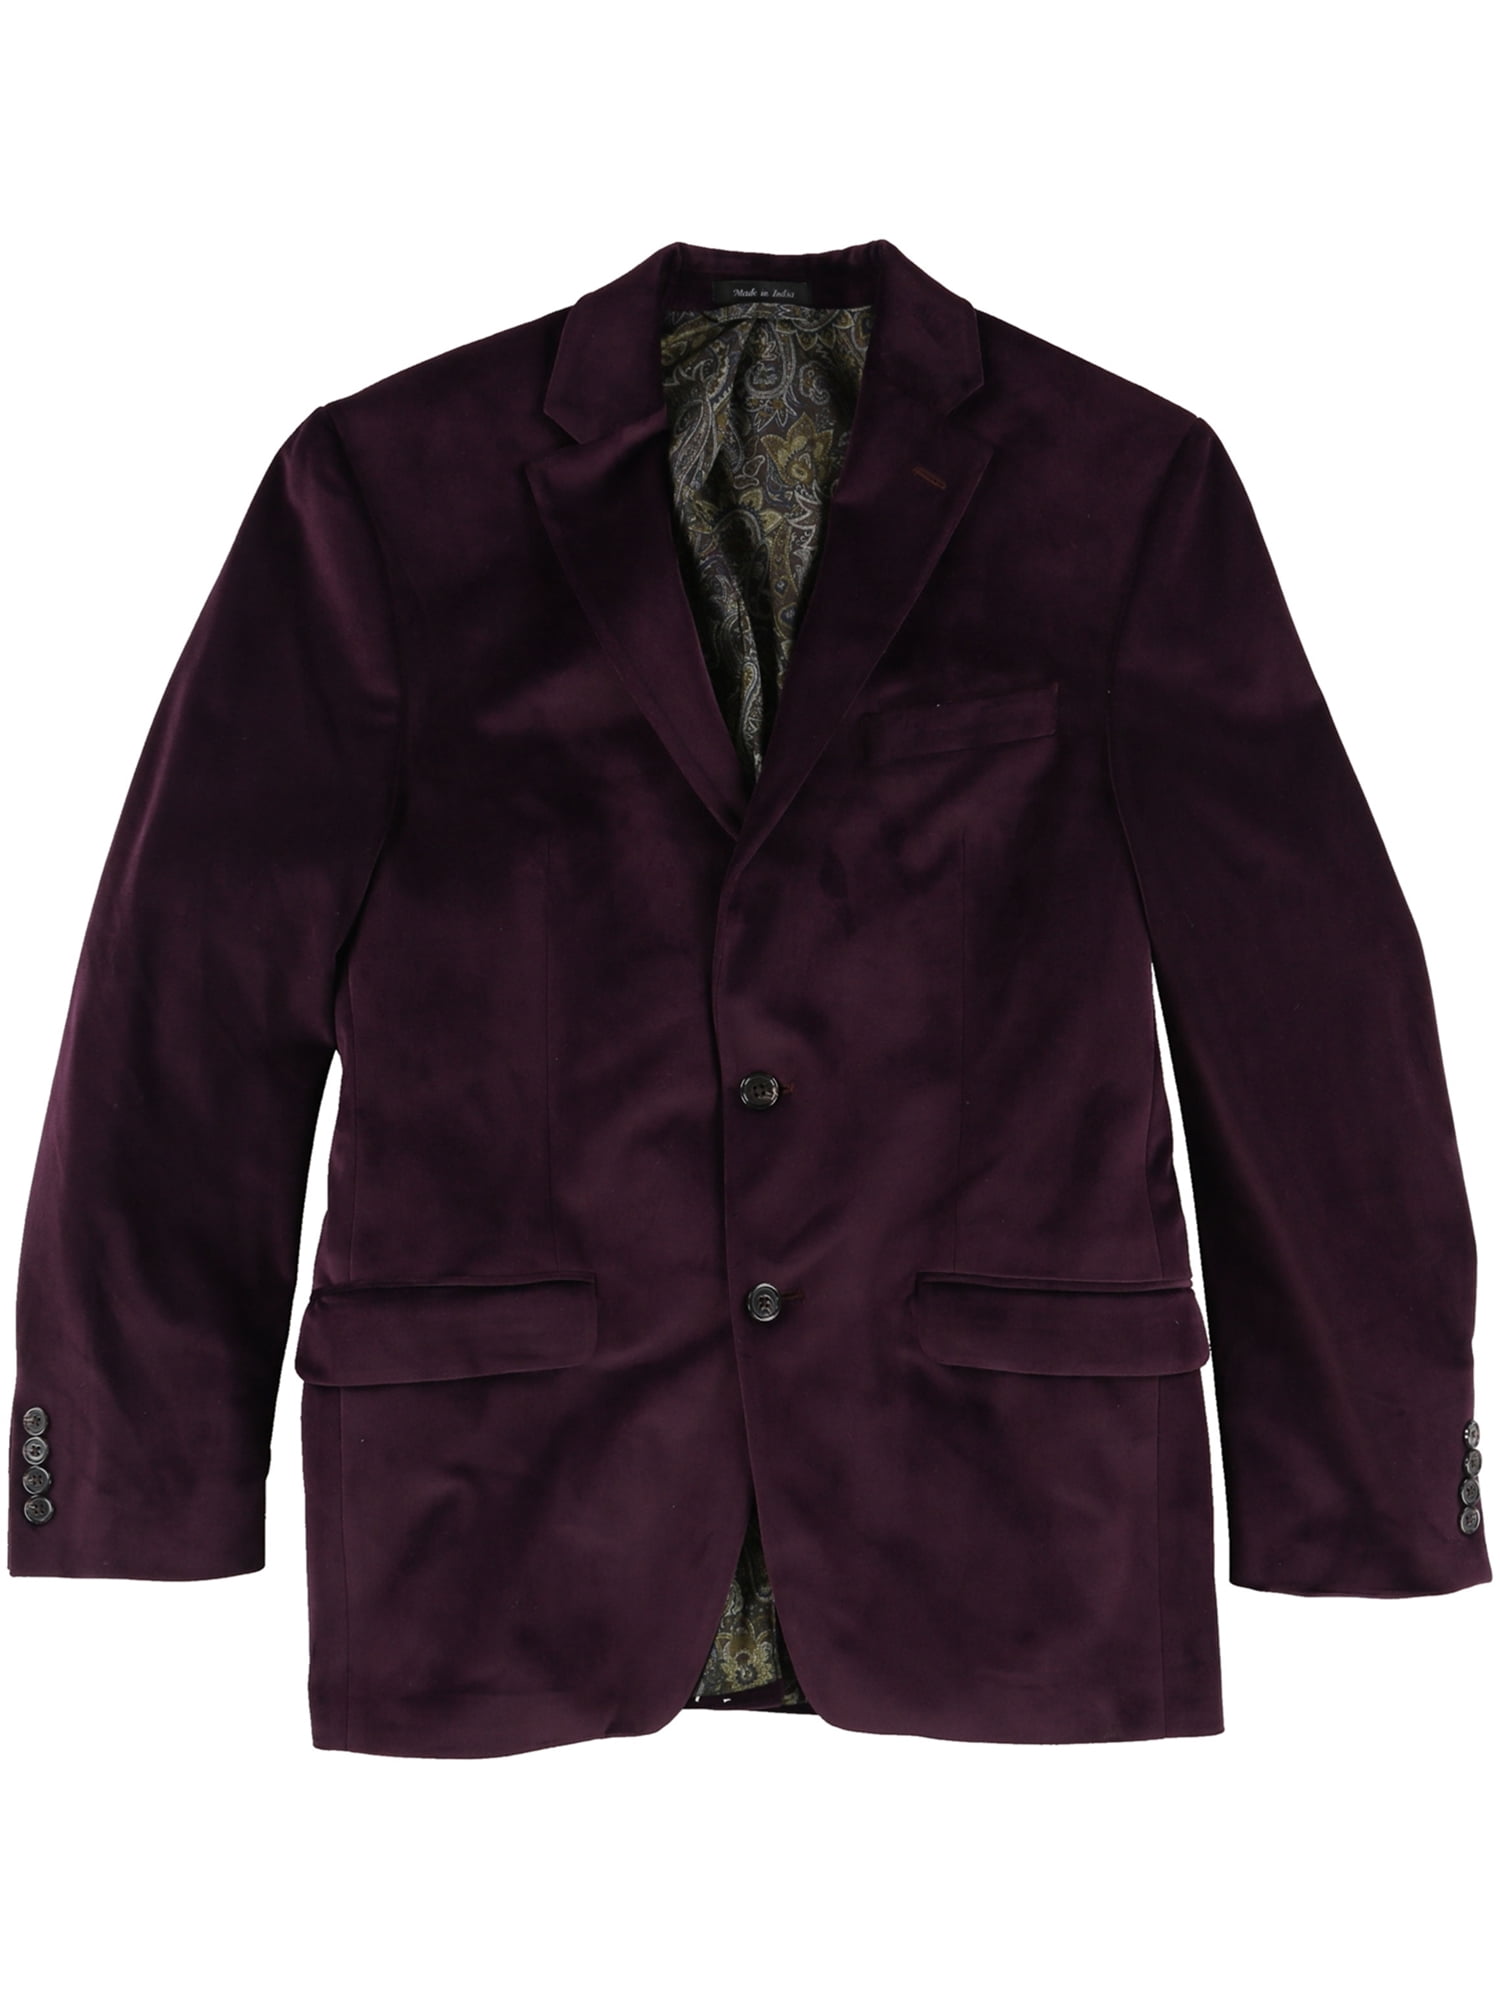 ralph lauren burgundy coat